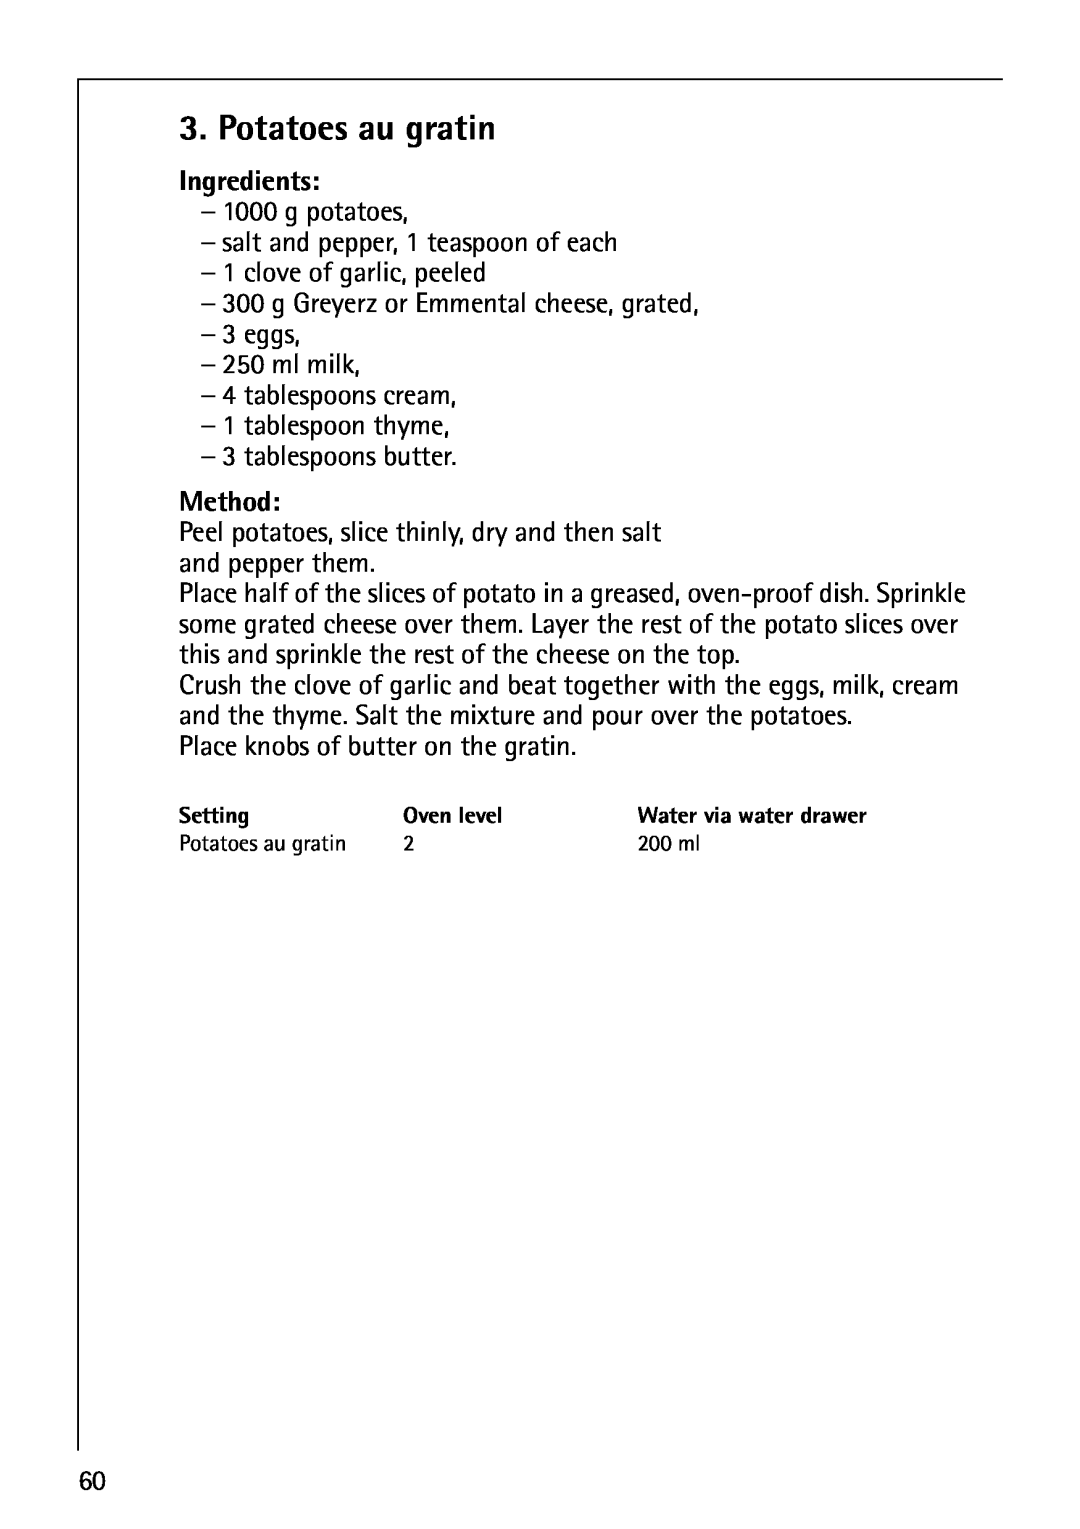 AEG B8920-1 manual Potatoes au gratin, Ingredients, Method 